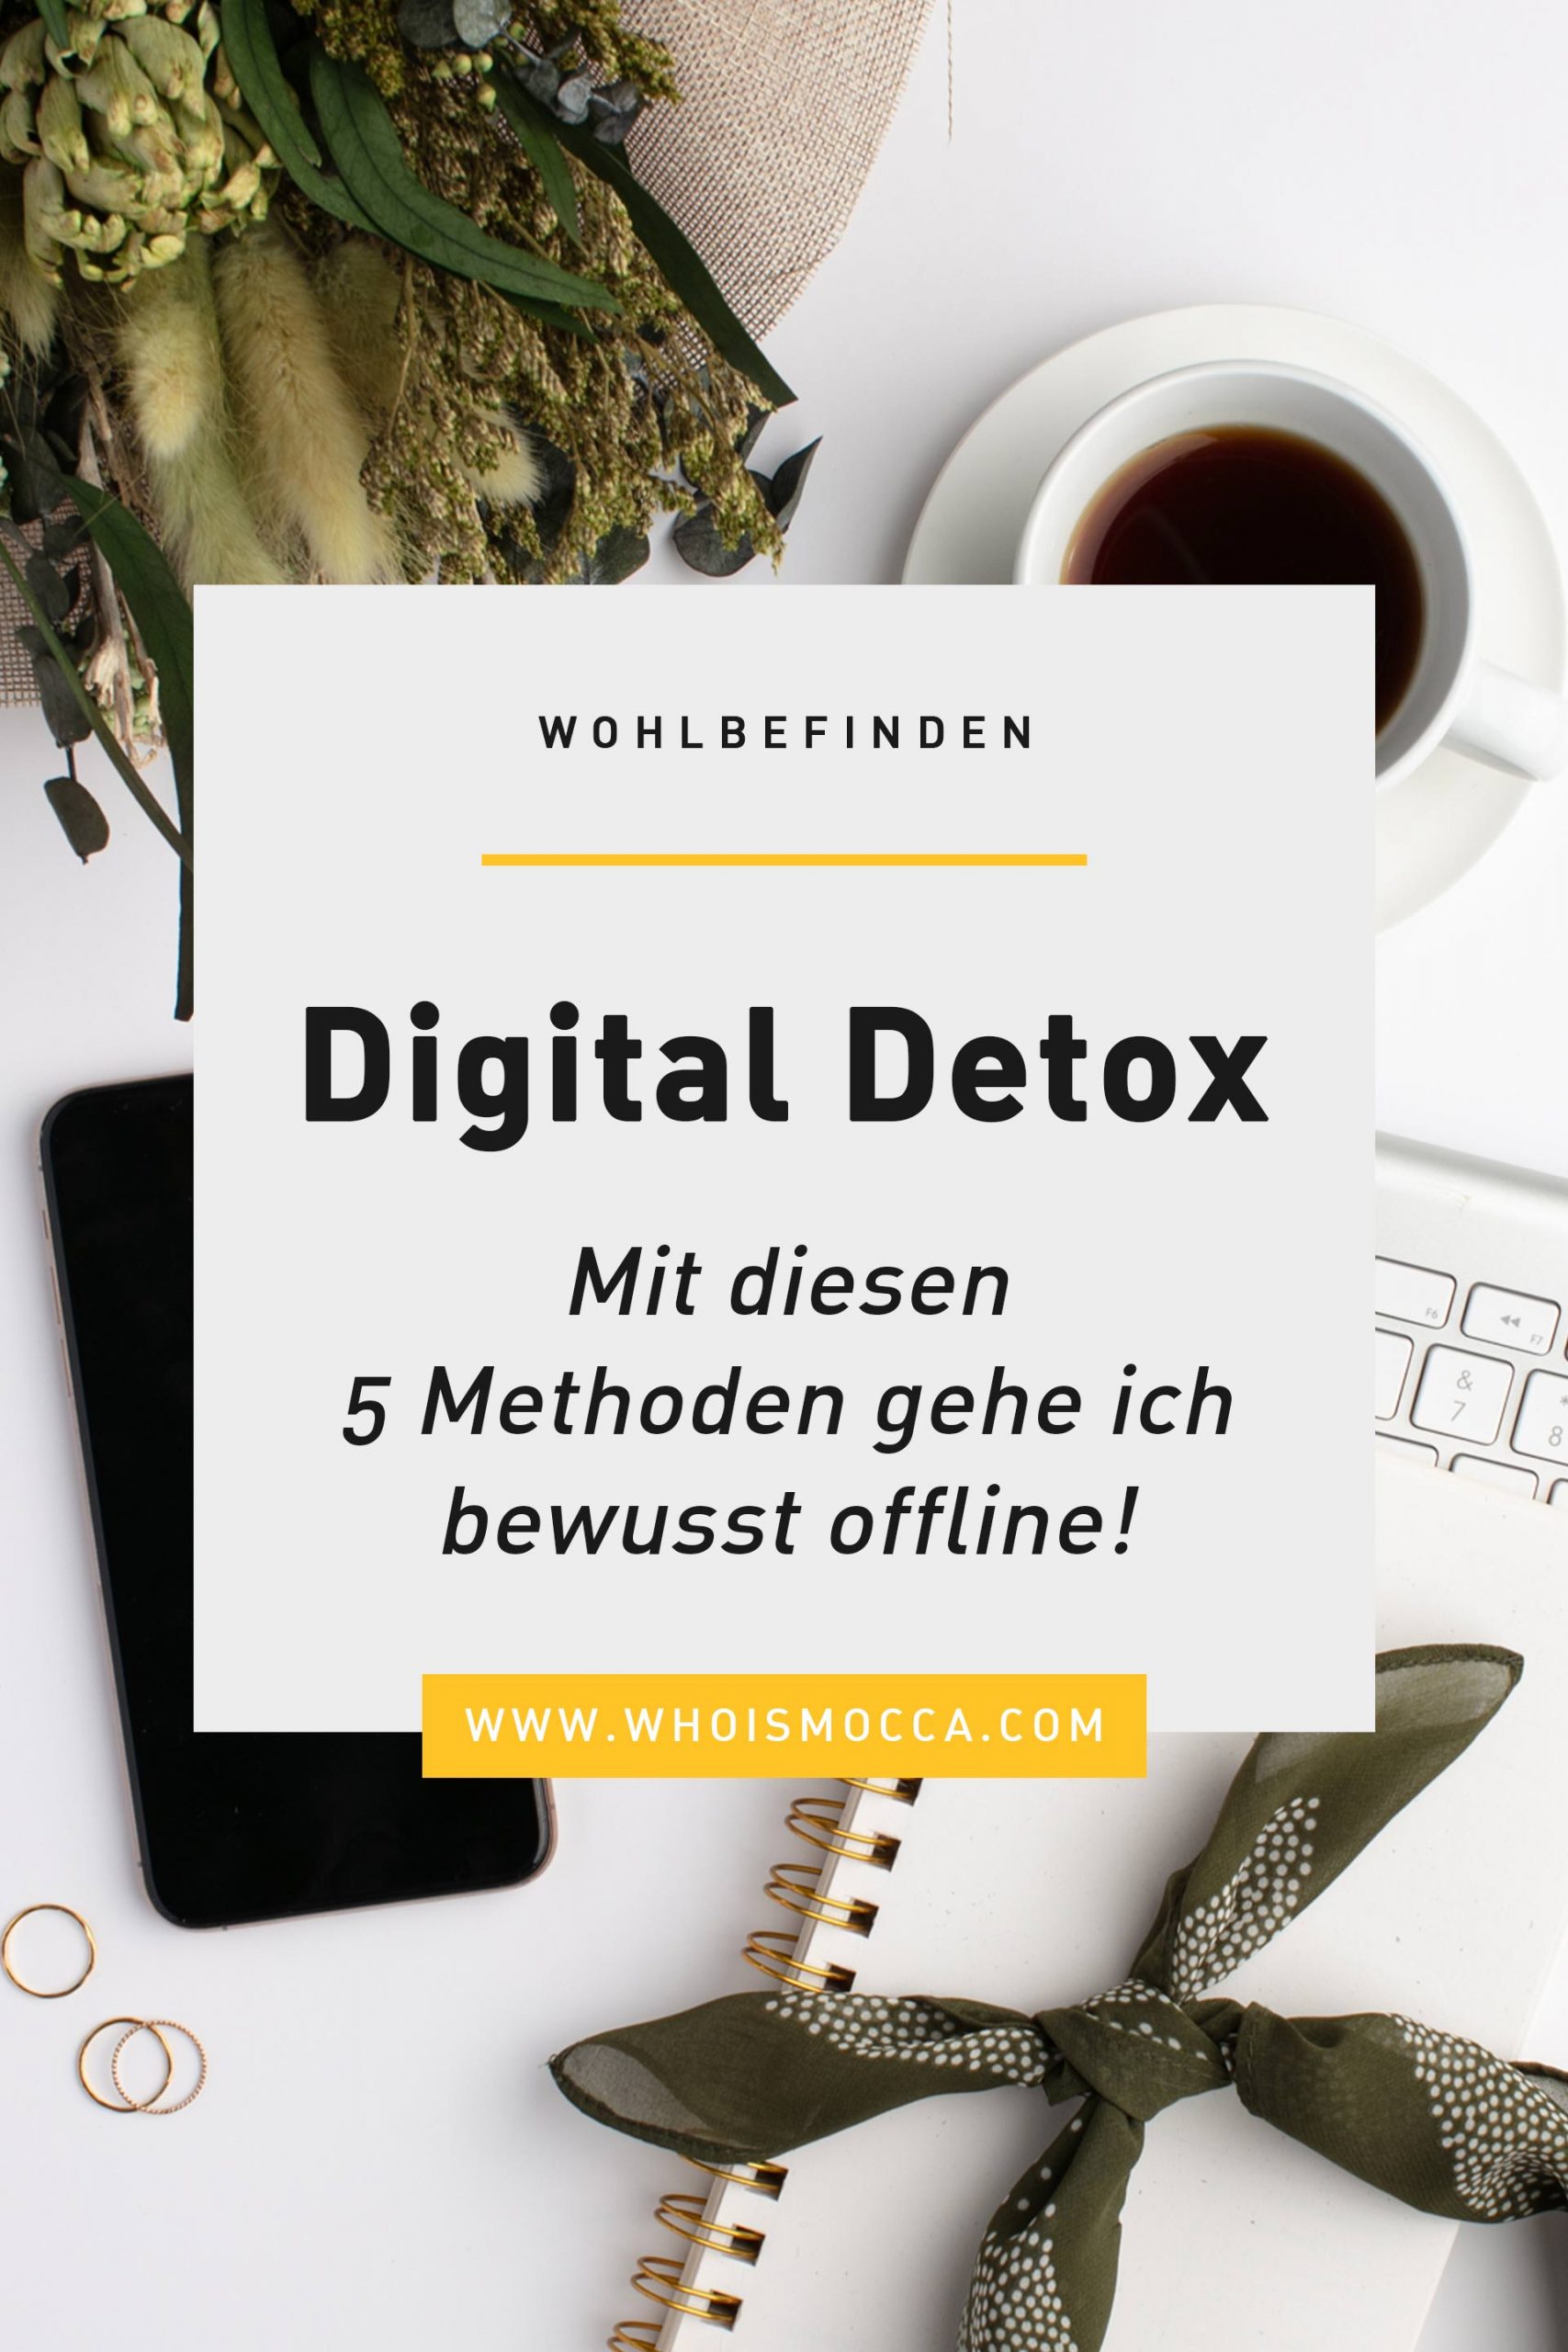 Digital Detox, eine Art der digitalen Entgiftung, kann uns dabei helfen, uns vom Handywahnsinn zu befreien! In diesem Blogbeitrag zeige ich dir, mit welchen simplen Methoden du ganz einfach bewusst offline gehen kannst!